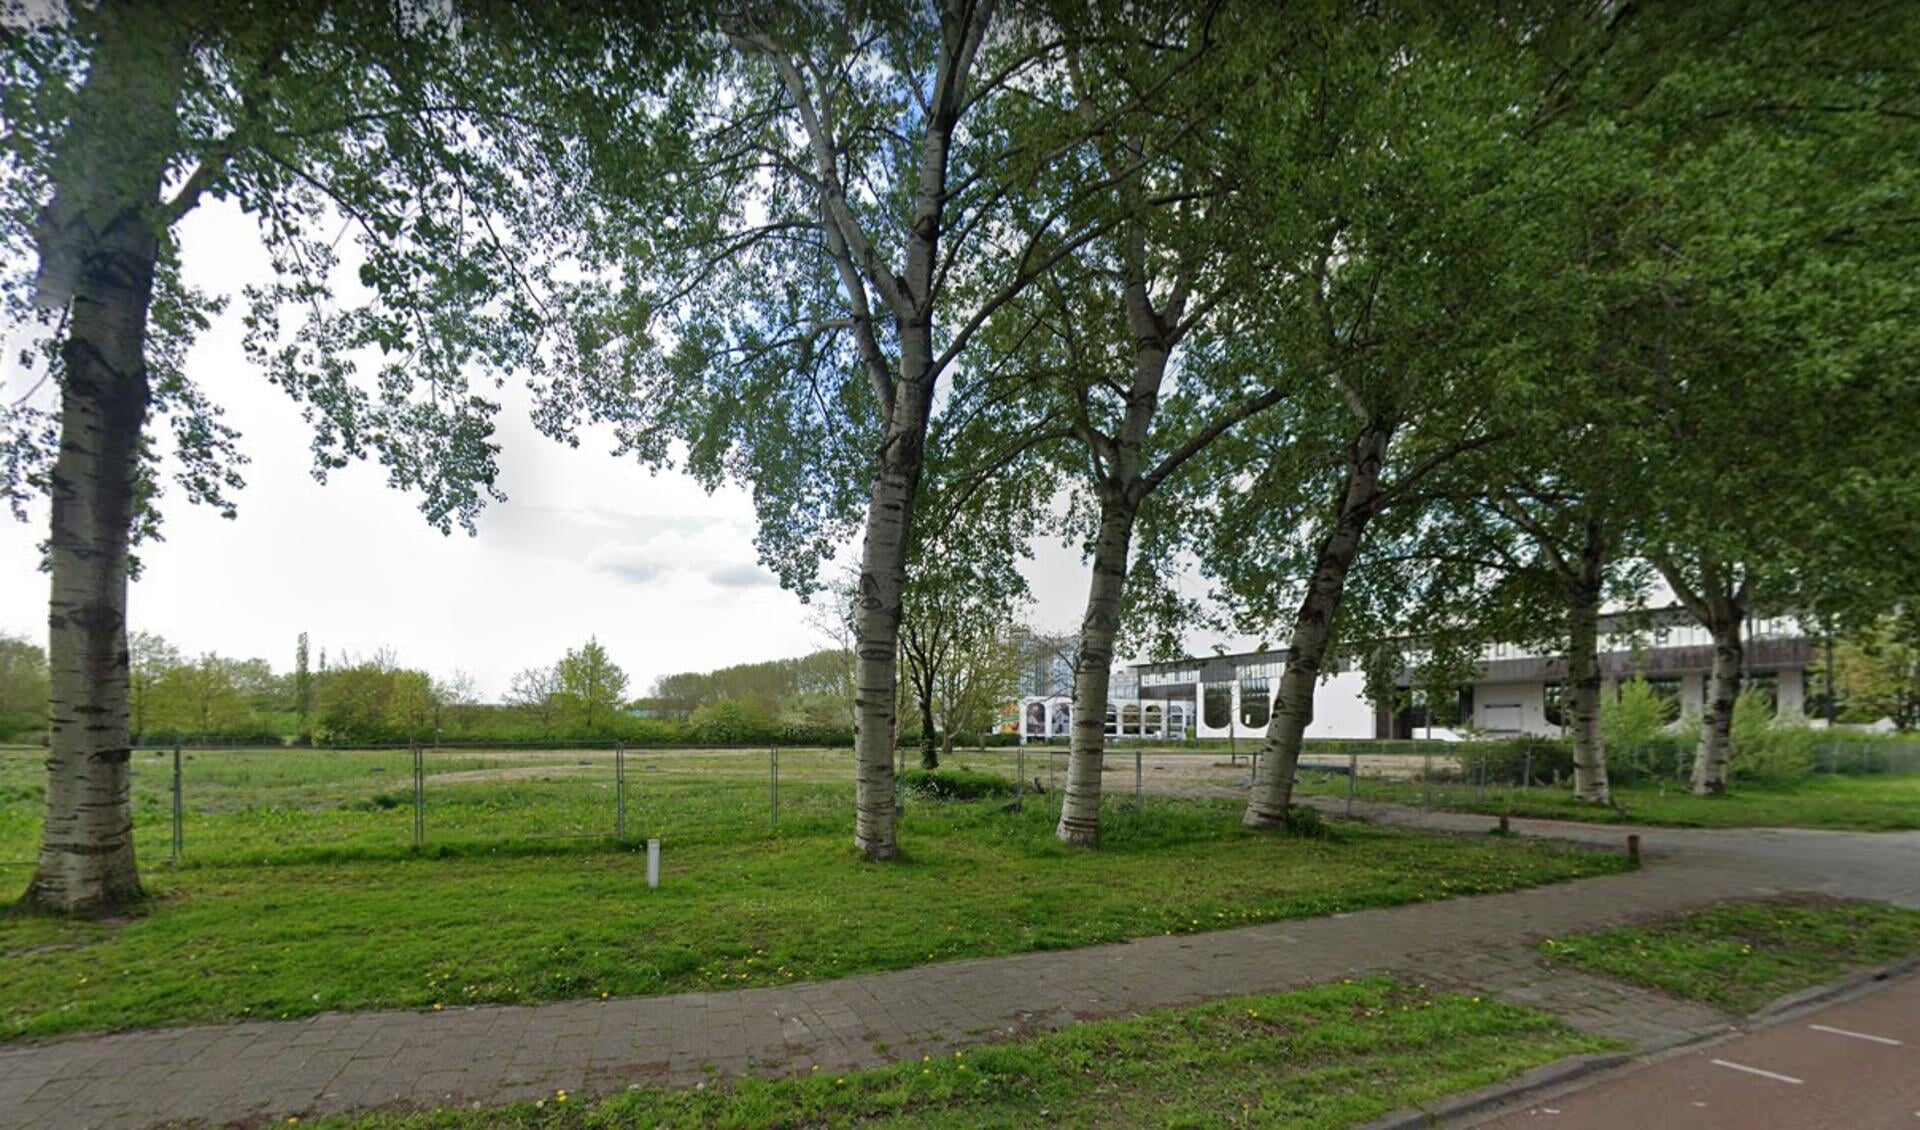 Buizerdlaan 12 in Nieuwegein is momenteel een grote grasvlakte.